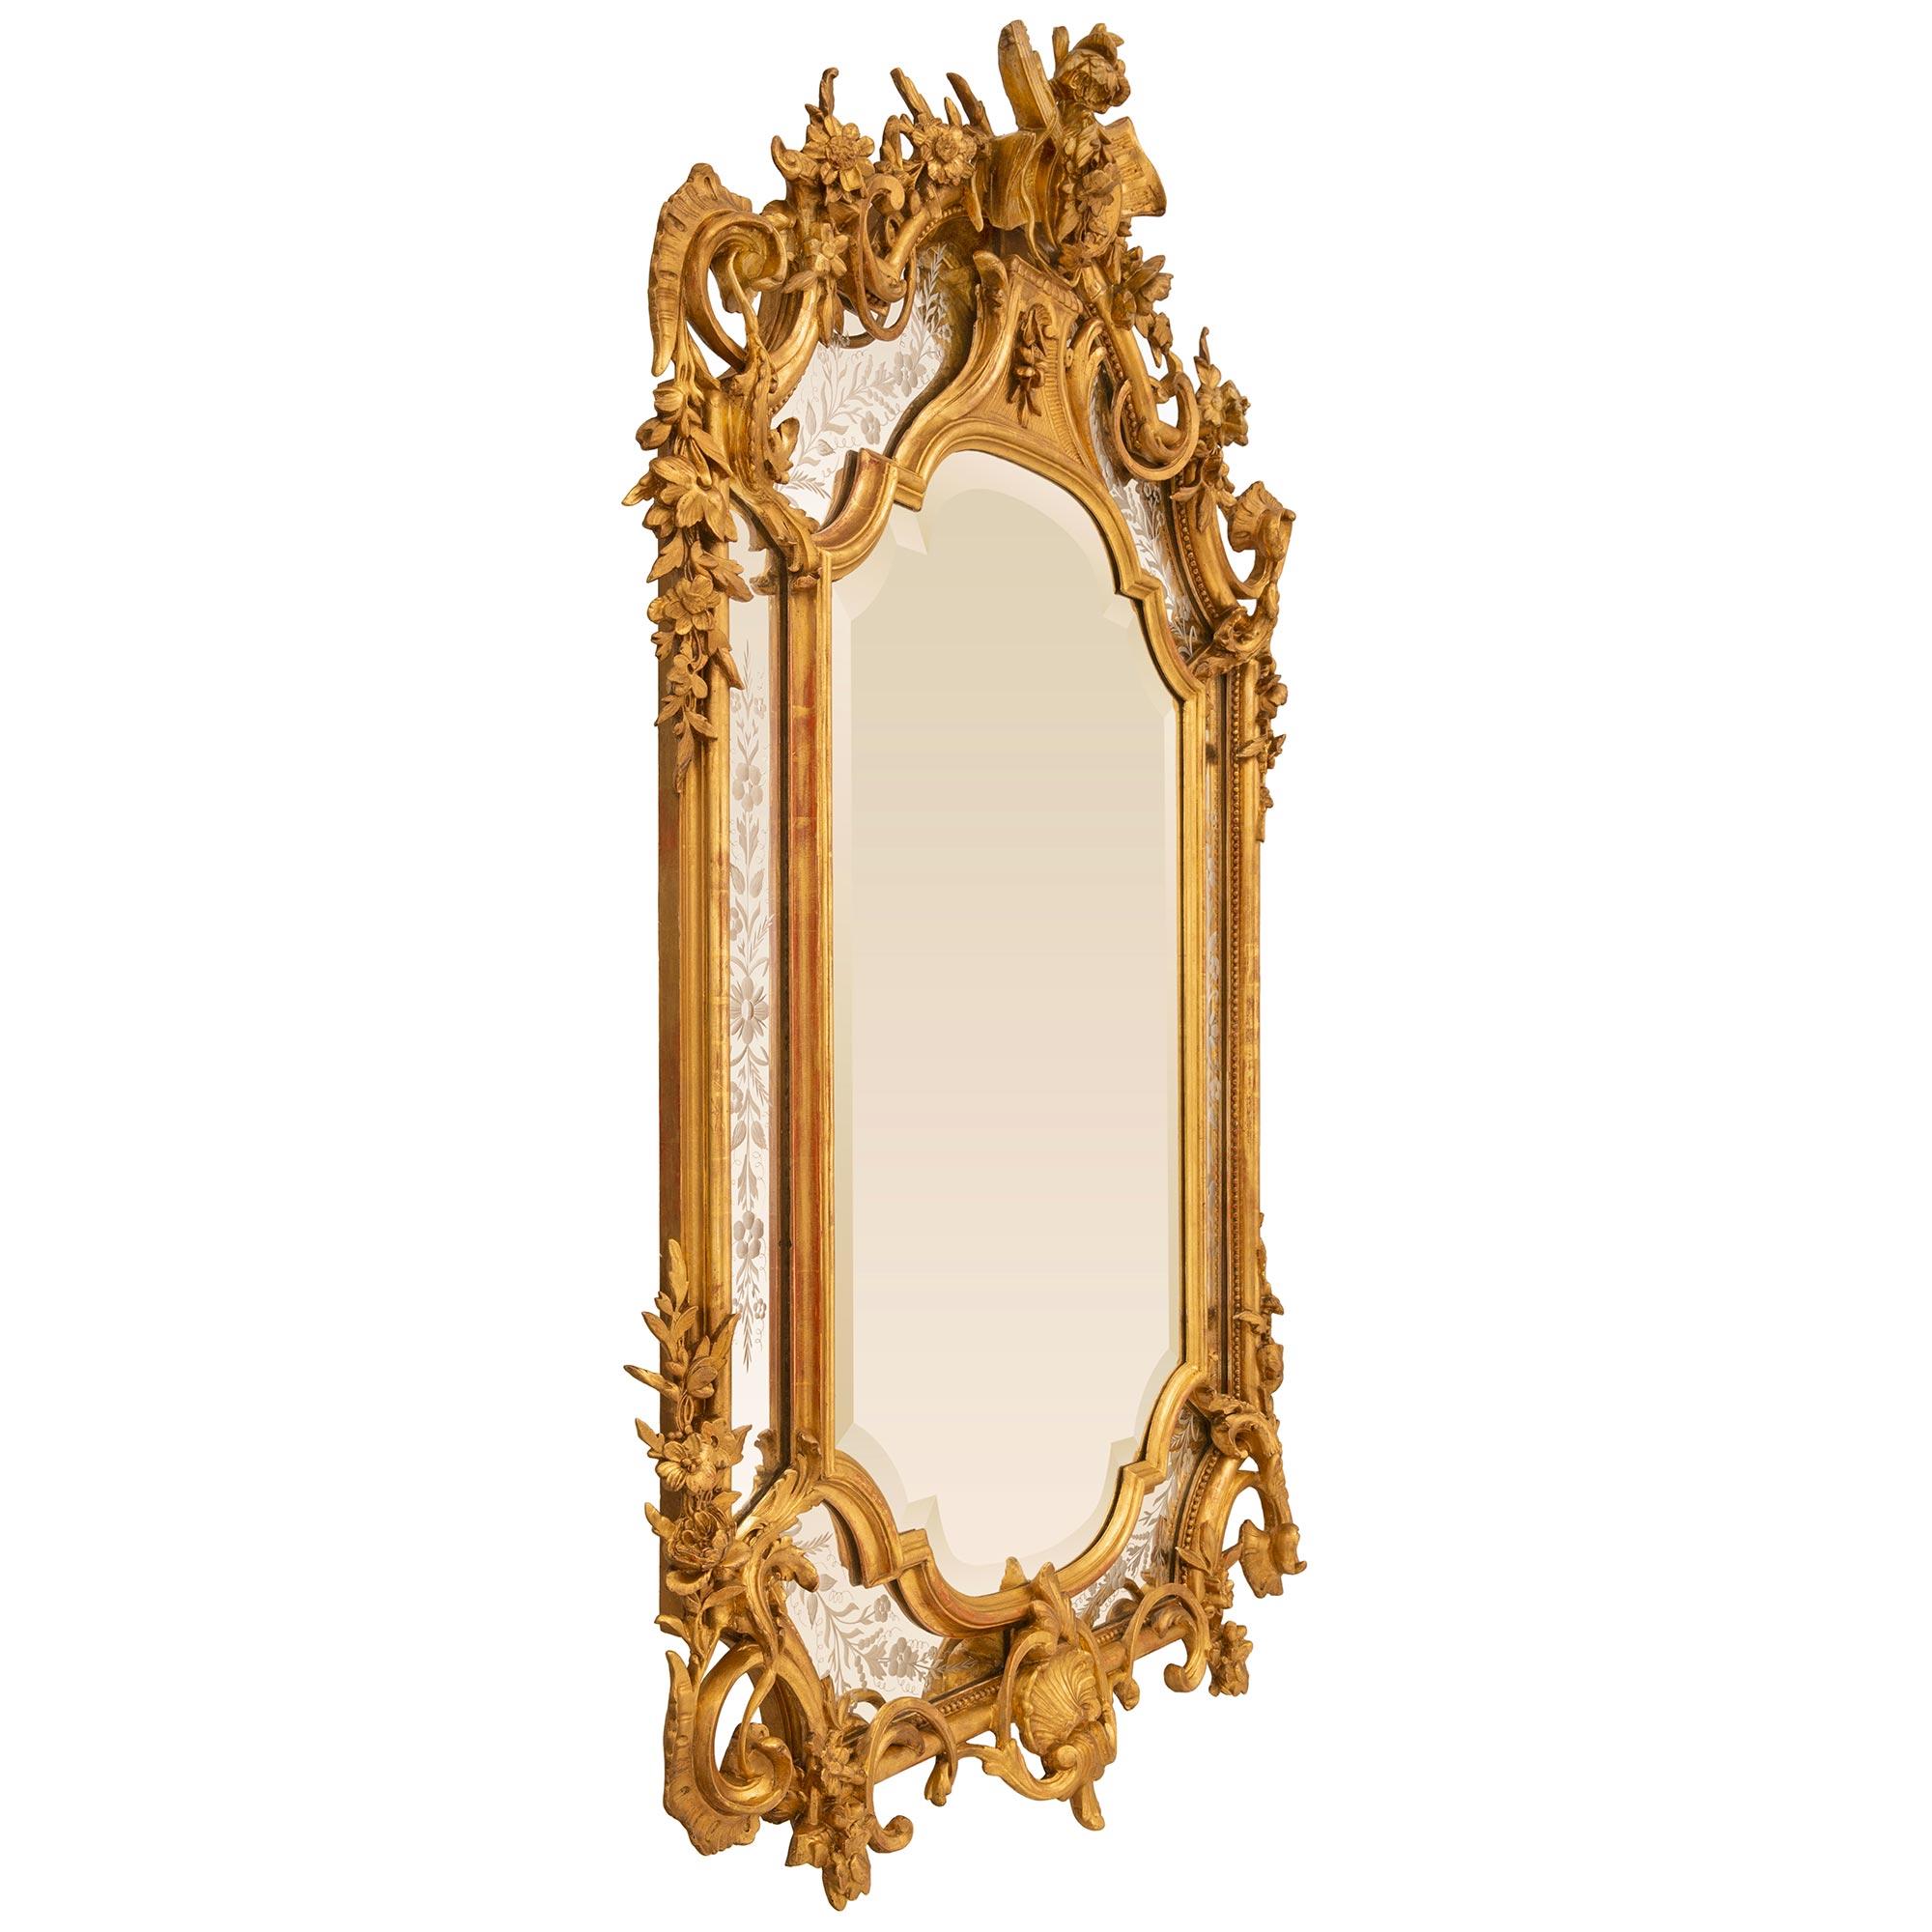 Eine sehr beeindruckende und äußerst elegante Französisch 19. Jahrhundert Louis XVI st. Giltwood Doppelrahmen Spiegel. Die zentrale Spiegelplatte ist von einer gesprenkelten Umrandung umgeben, während die äußeren Spiegelplatten reich mit geätzten